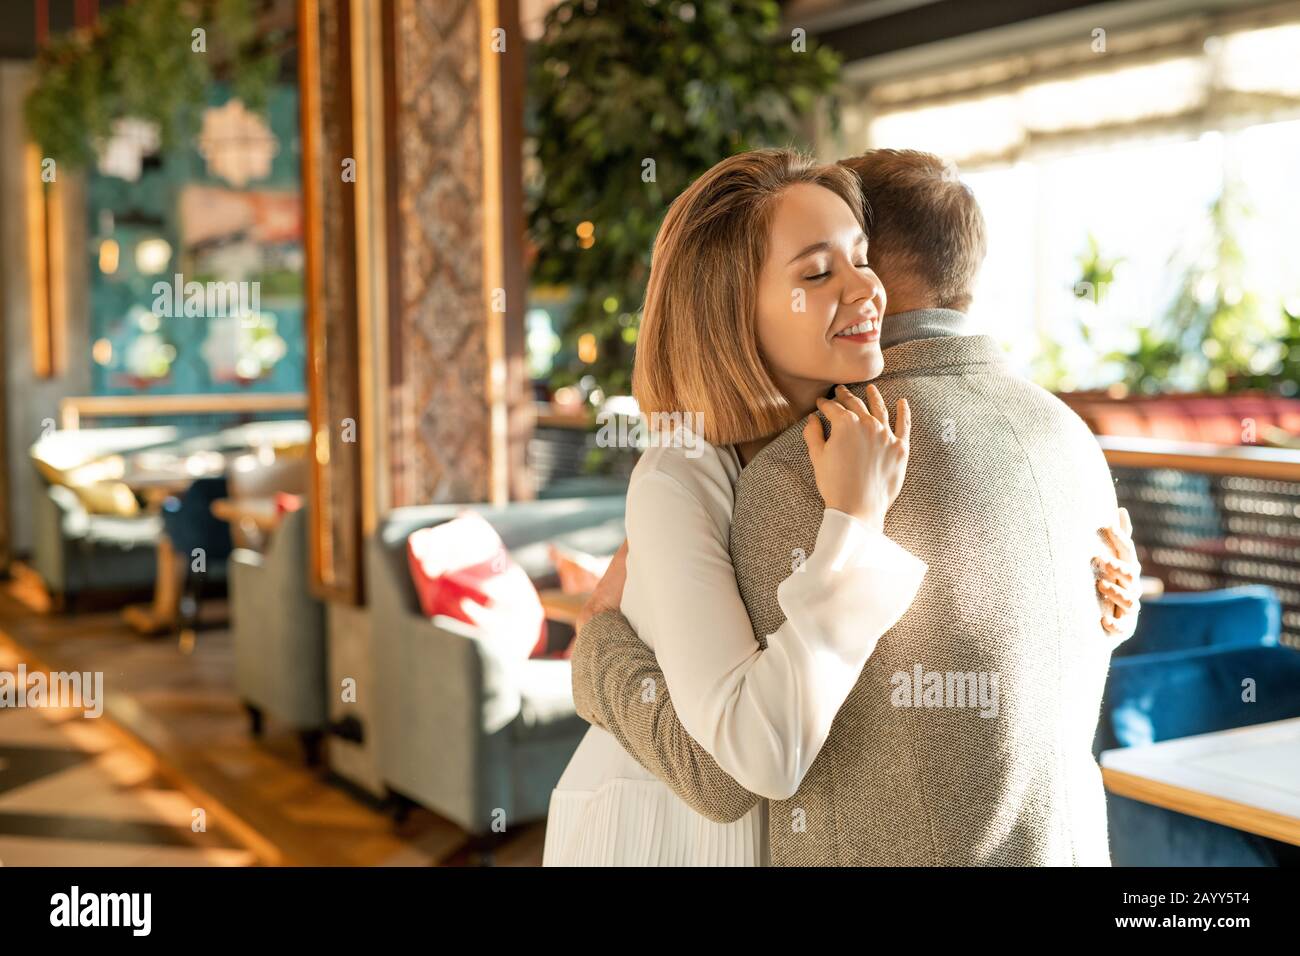 Fröhlicher junger Mann und Frau in Liebe begrüßen sich mit Umarmung im modernen Restaurant, horizontaler Mittelschuss Stockfoto